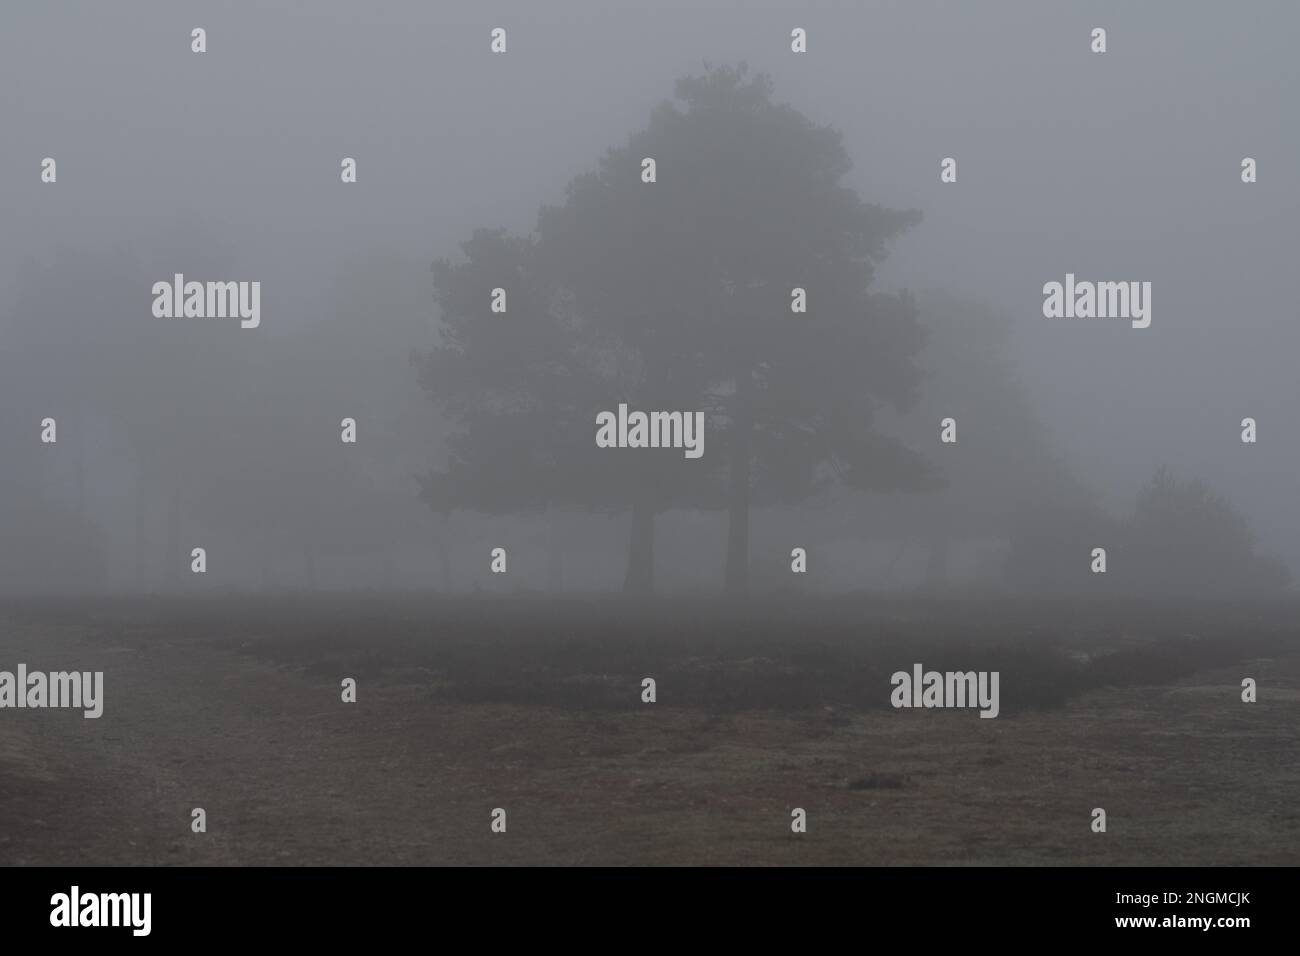 Von Nebel umhüllte Bäume Stockfoto